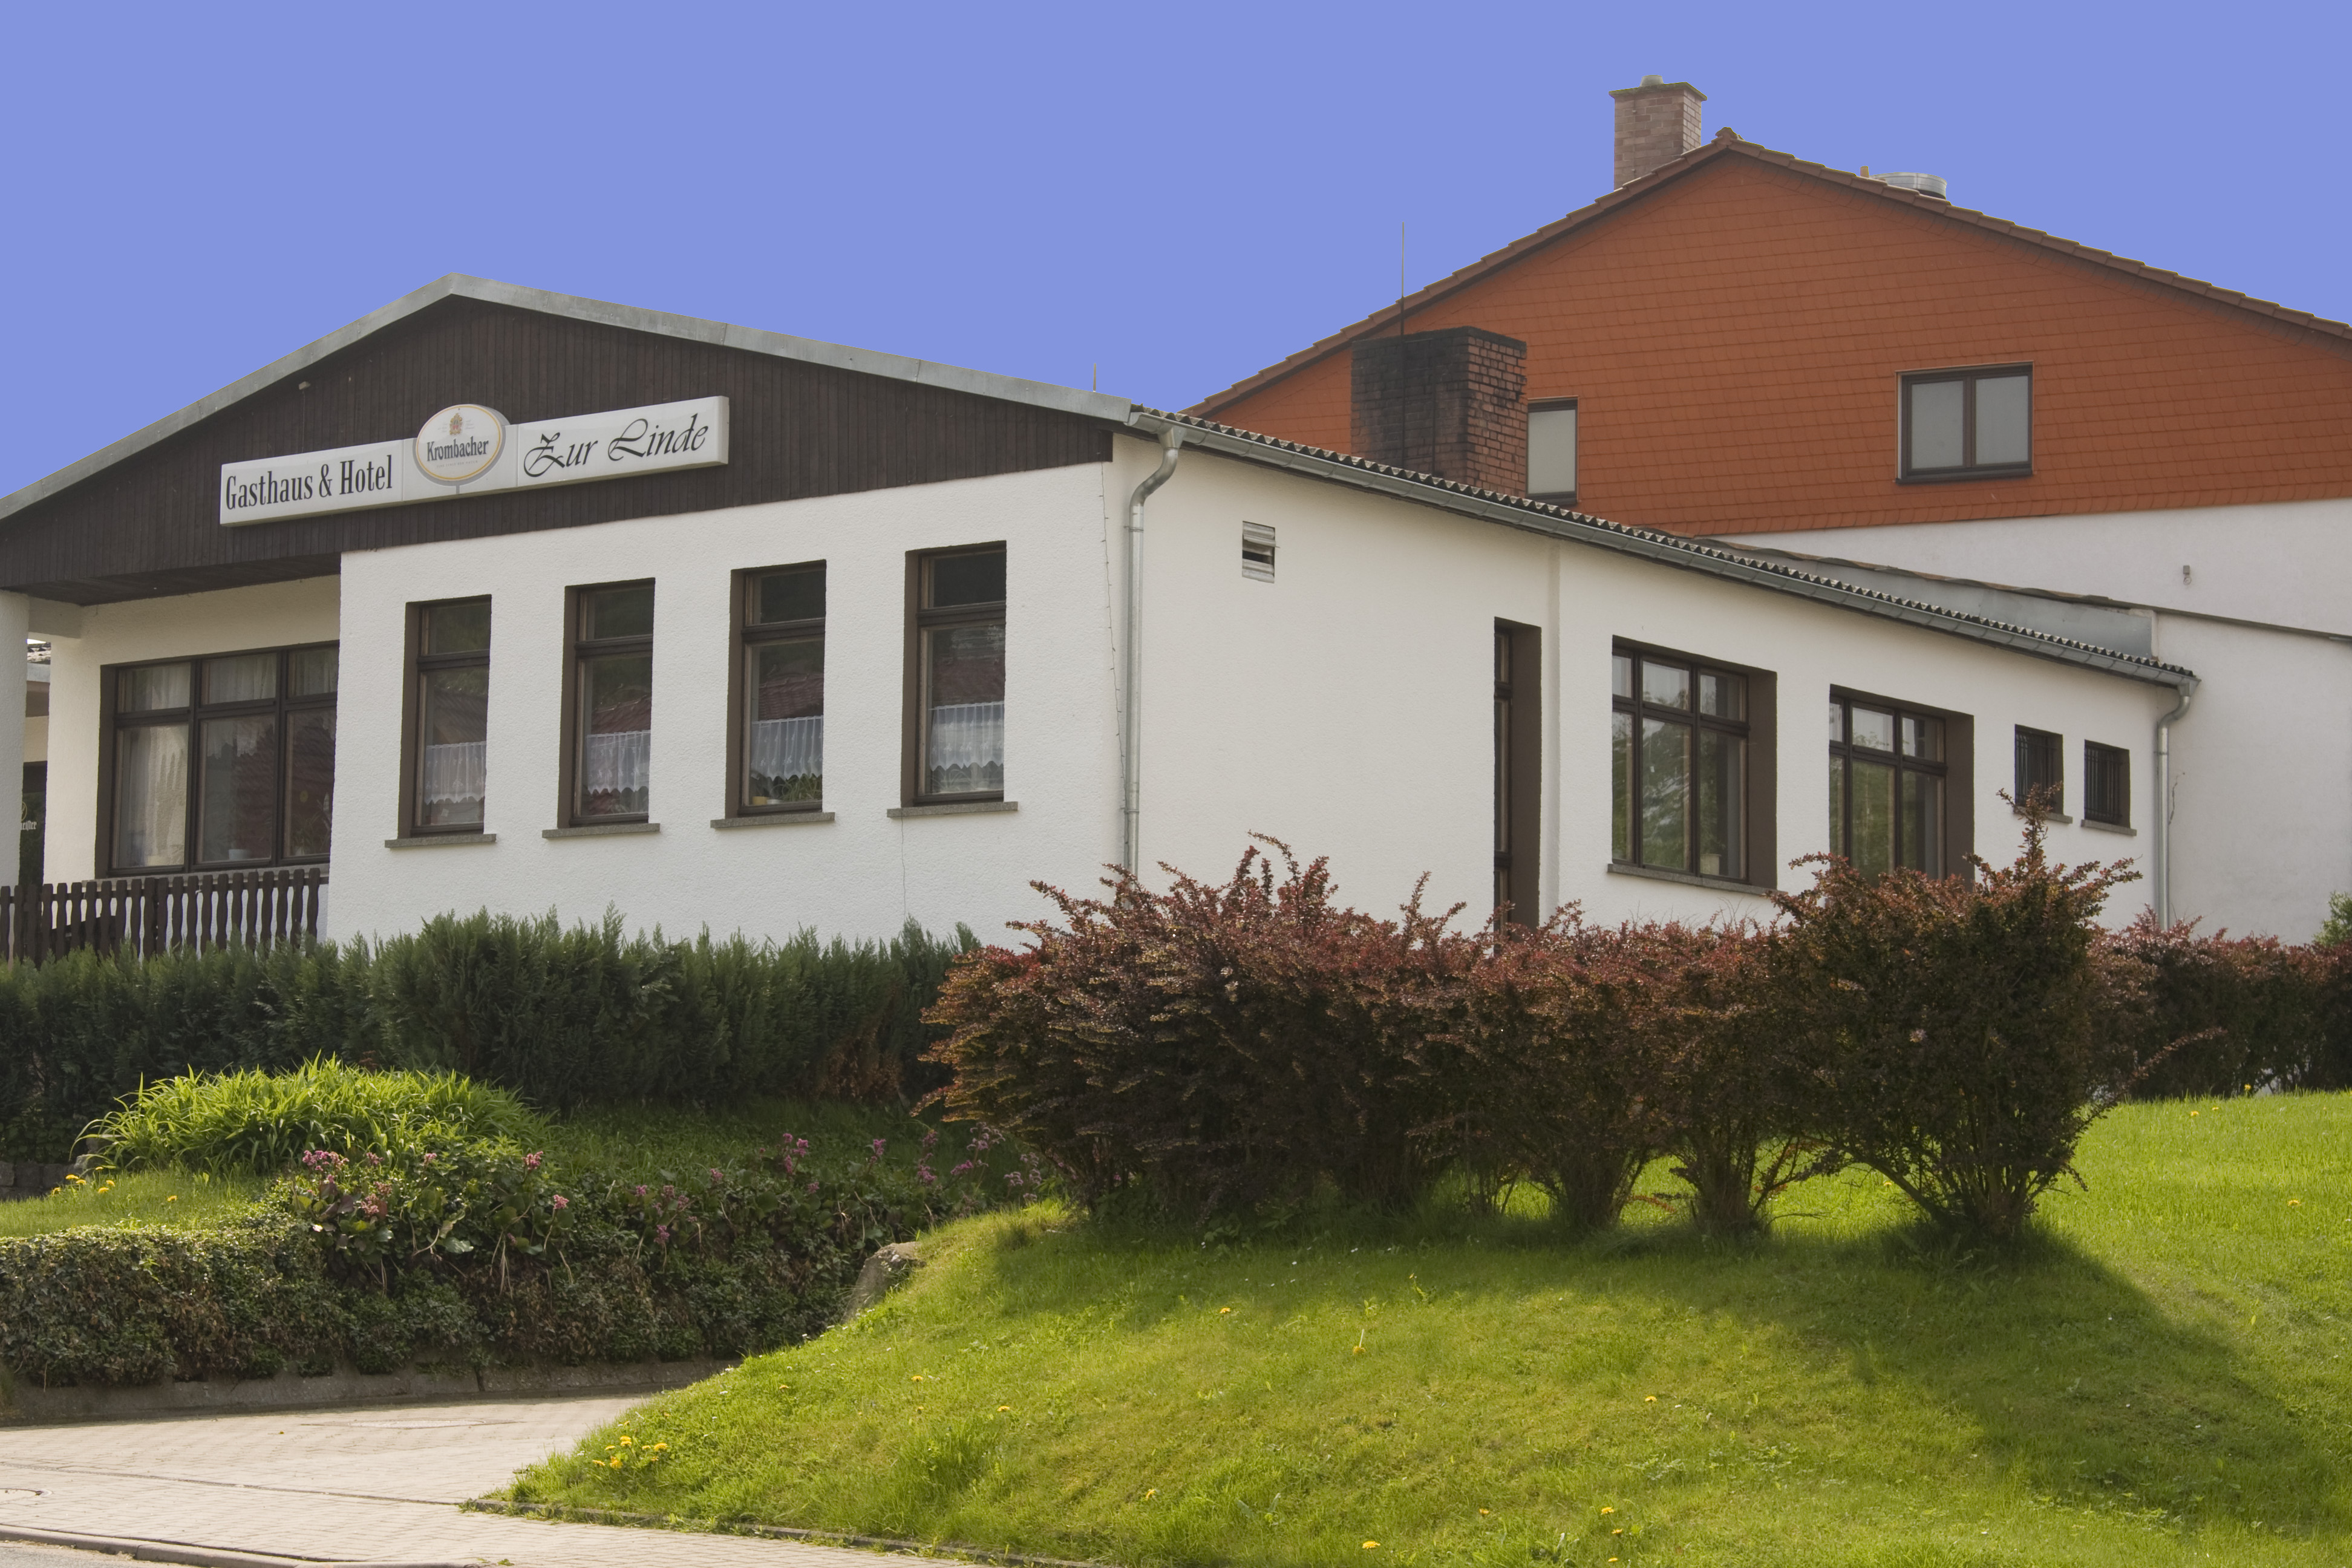 Gasthaus und Hotel in Neuendorf